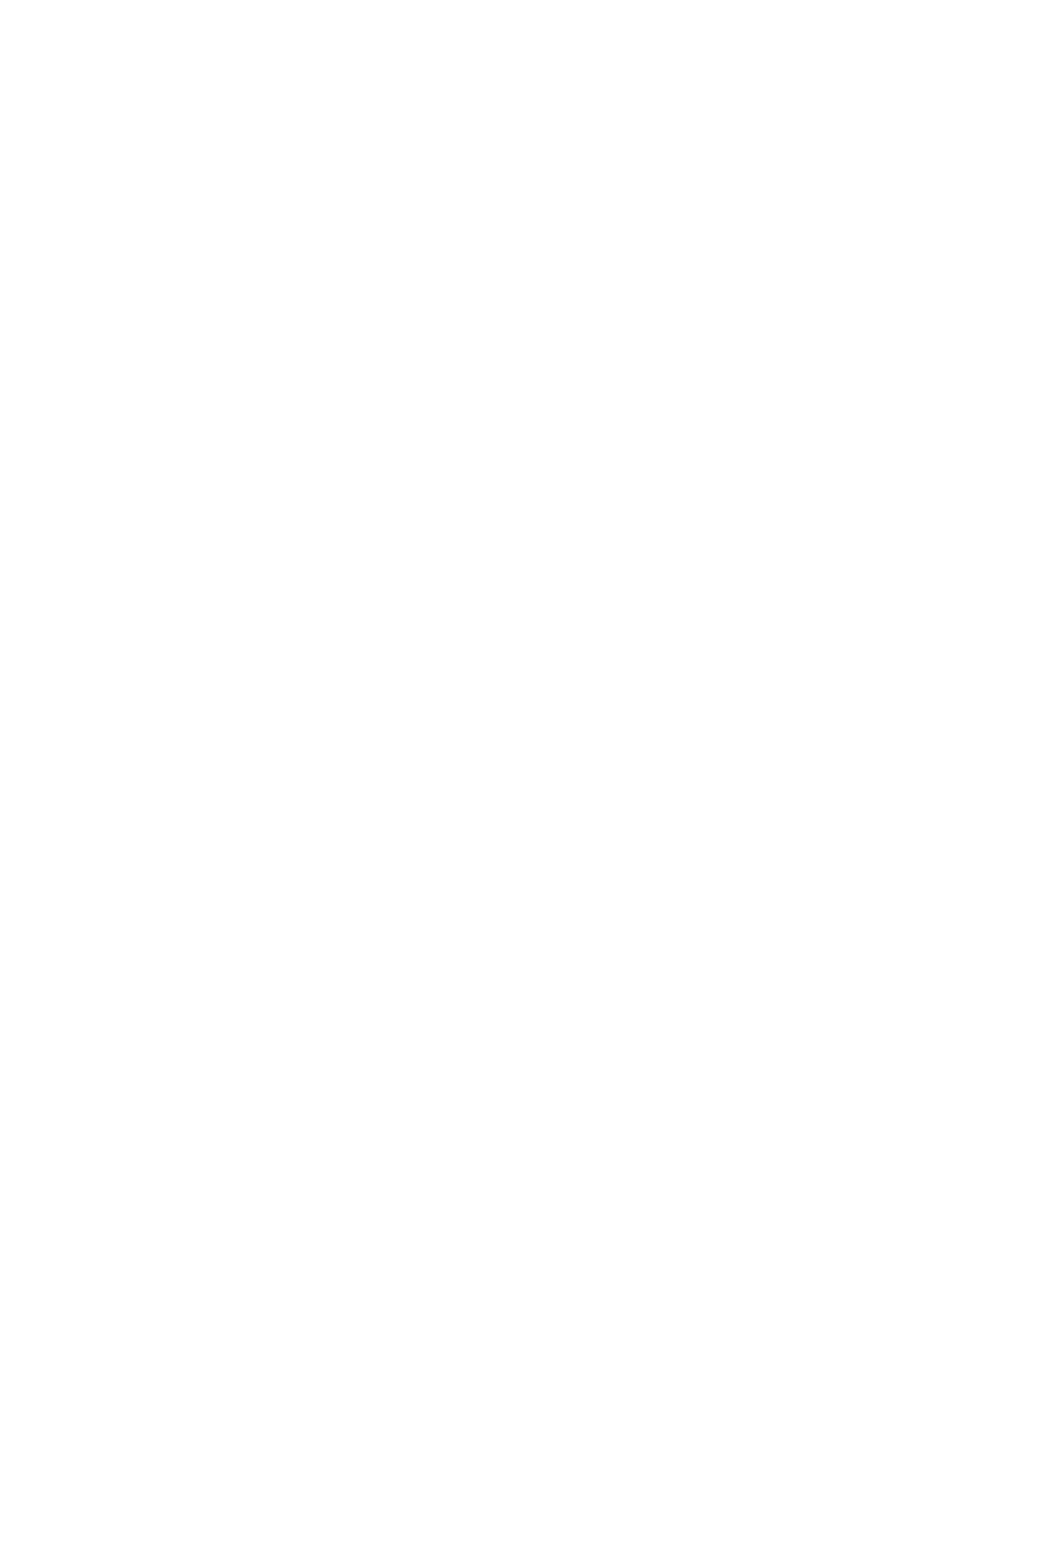 Playa Hotels & Resorts logo for dark backgrounds (transparent PNG)